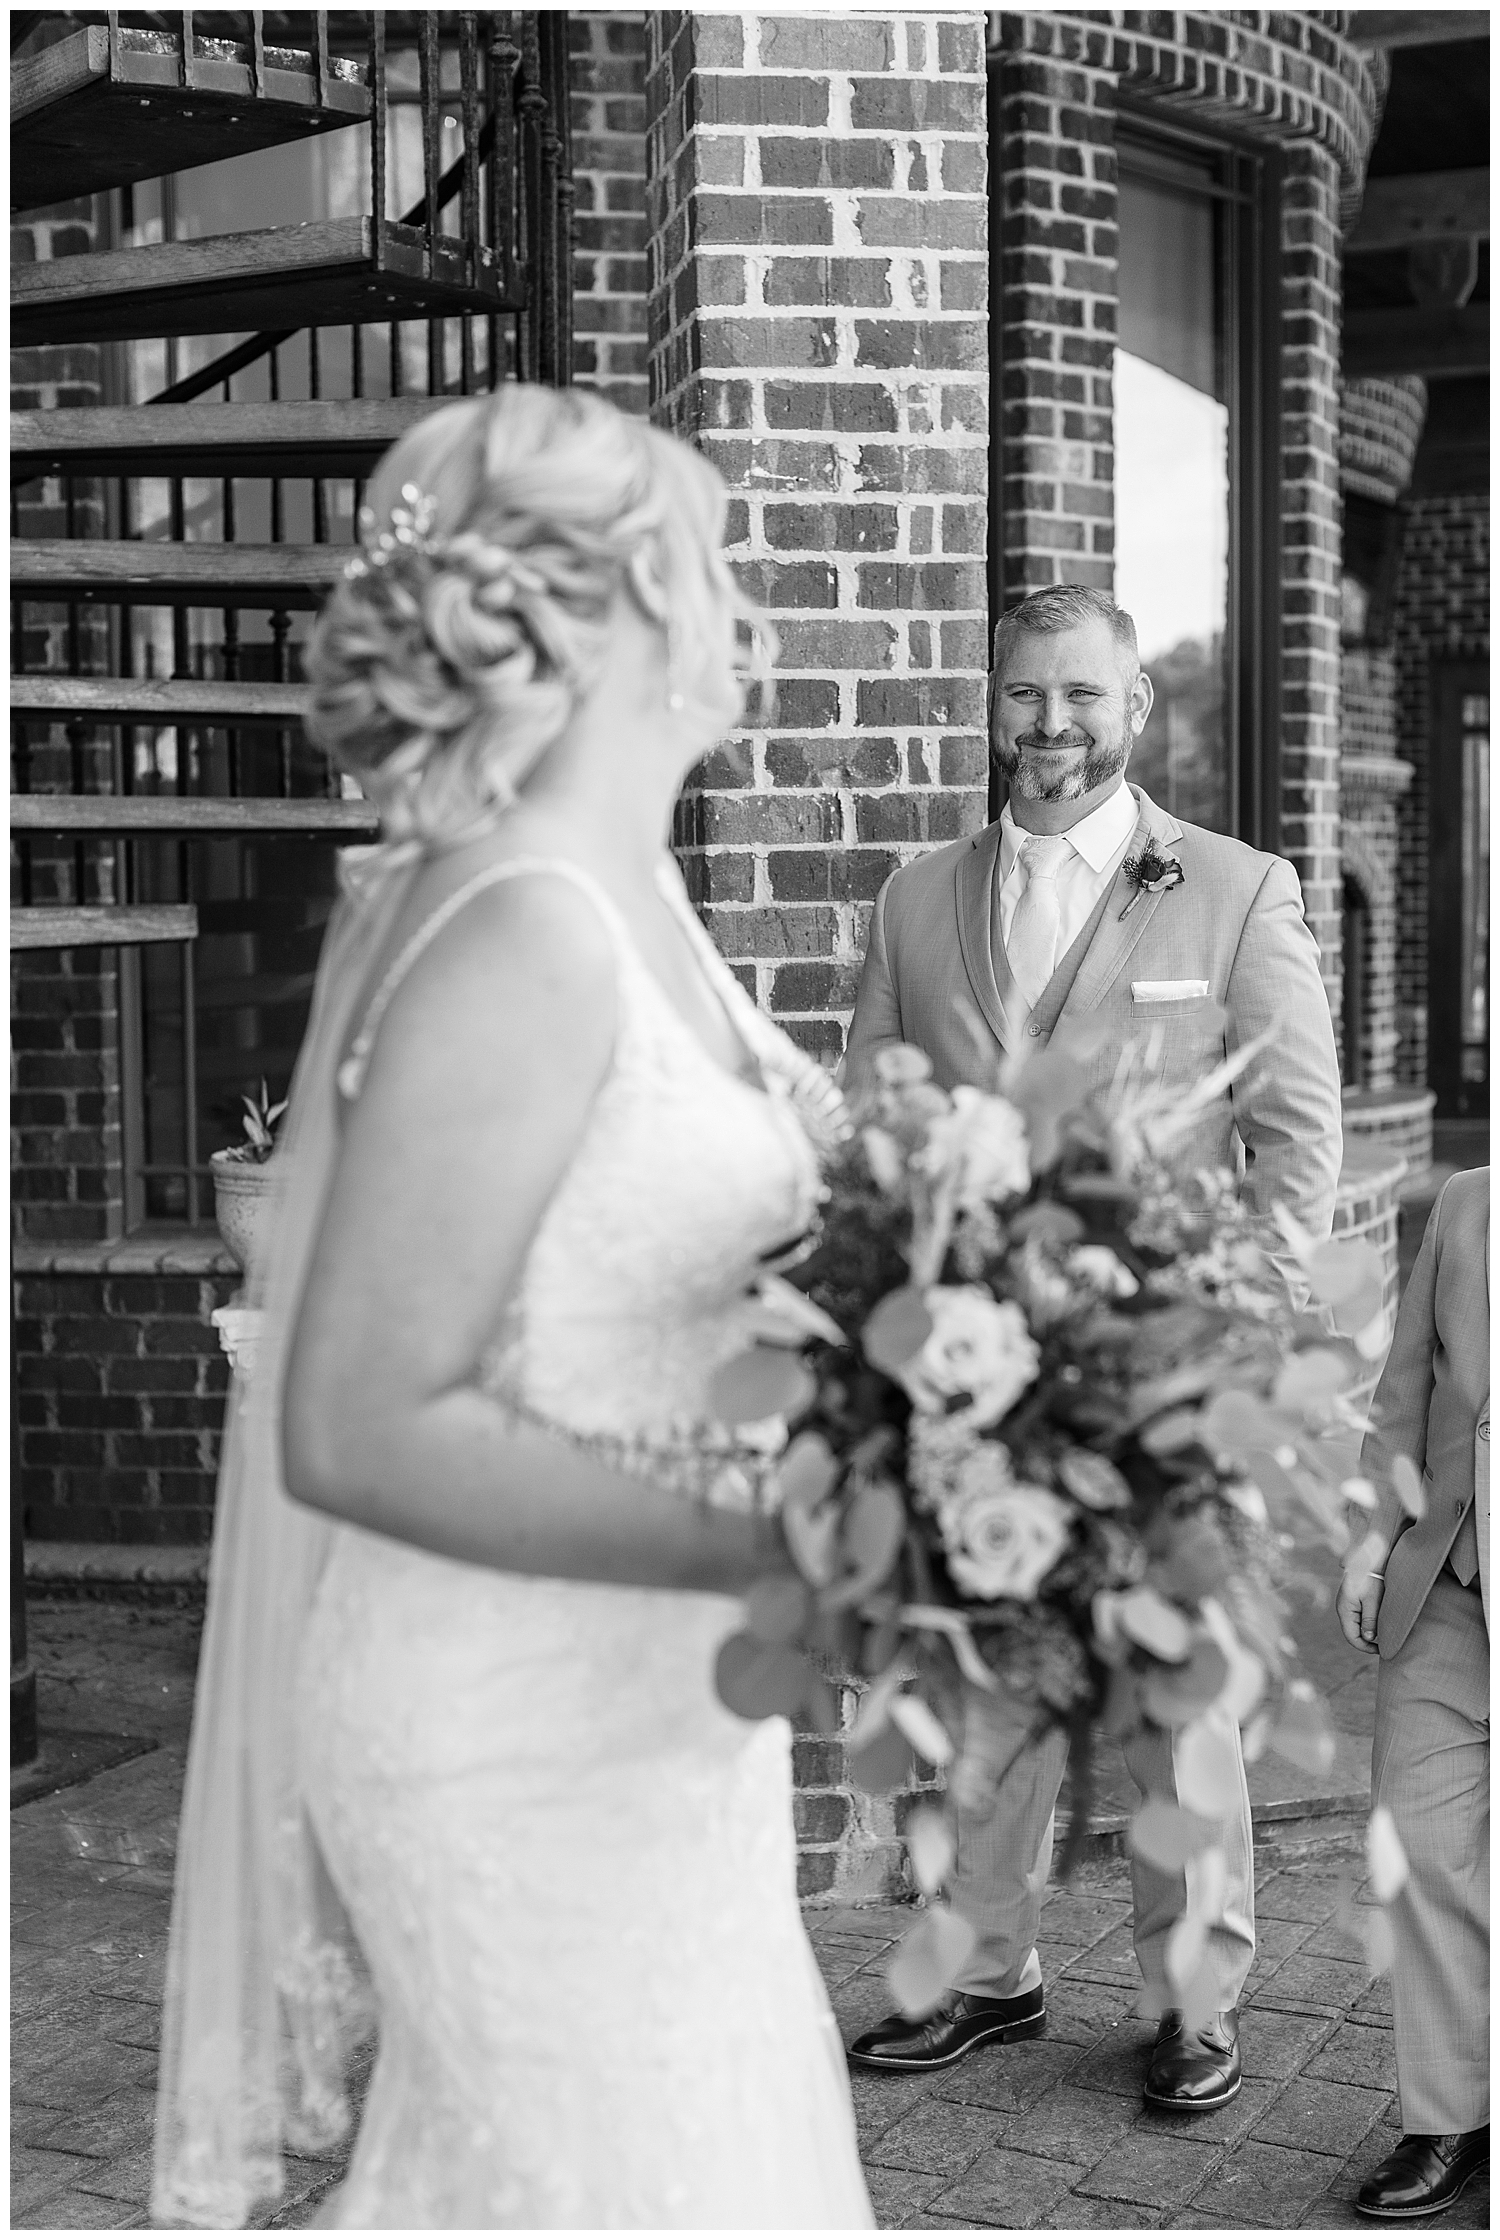 A groom admires his beautiful bride.